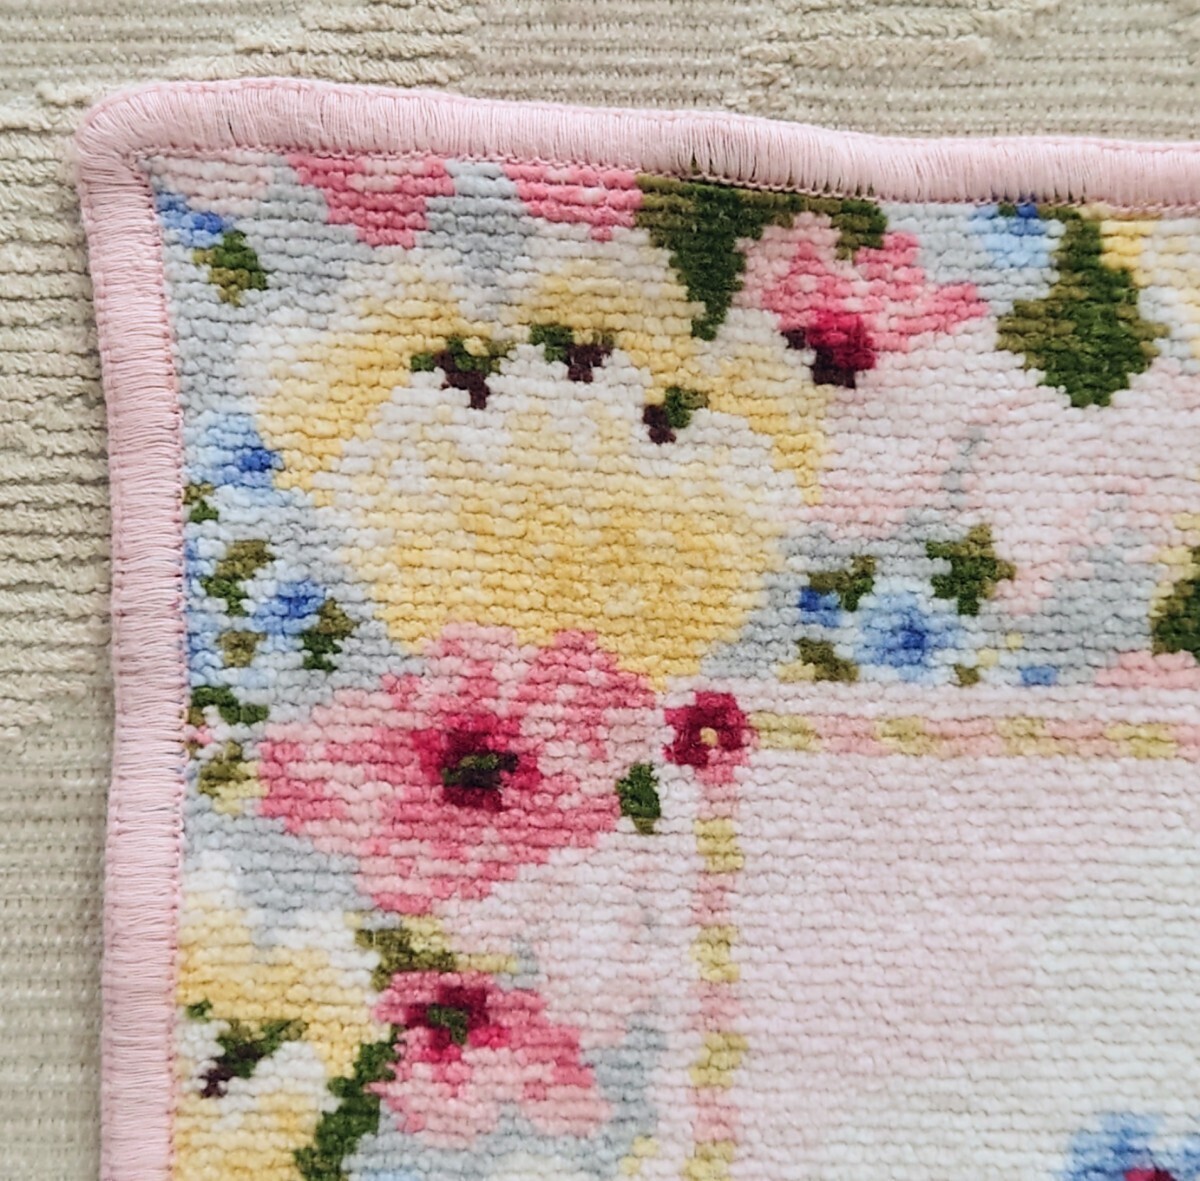  Feiler полотенце носовой платок бледно-розовый цветочный принт хлопок 100% Германия производства стоимость доставки 120 иен ~